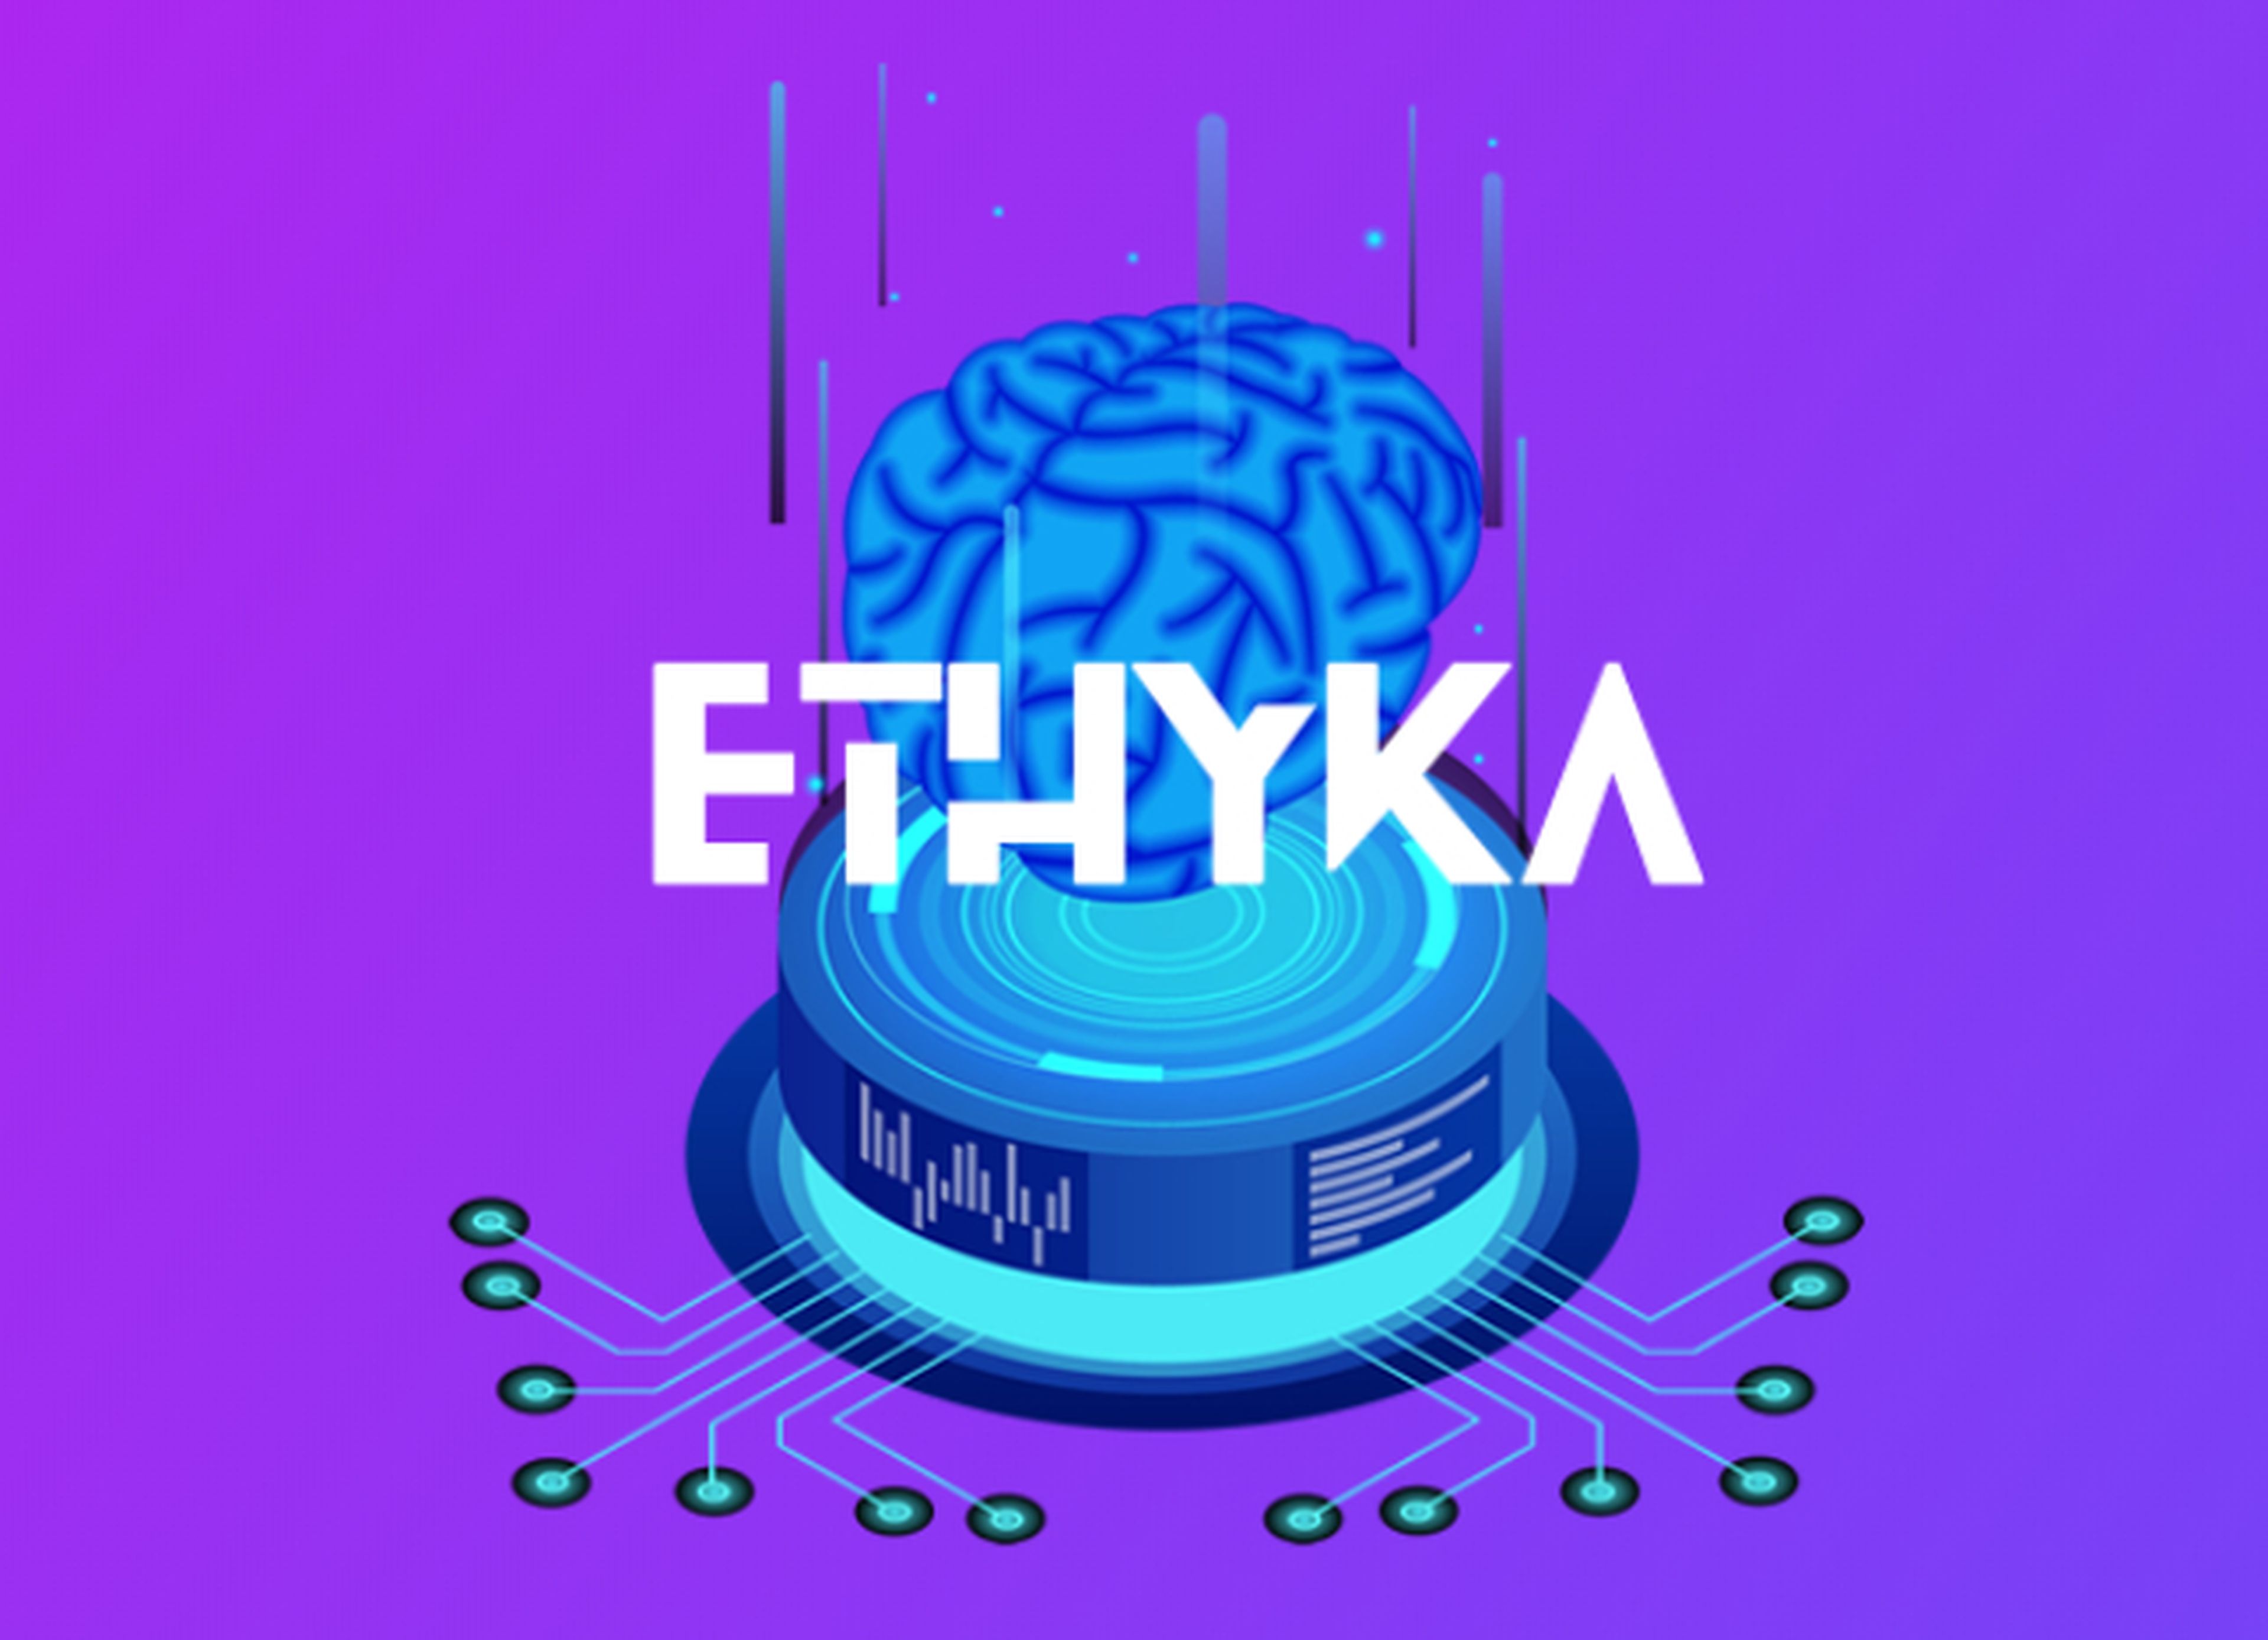 Ethyka, módulos éticos para inteligencia artificial